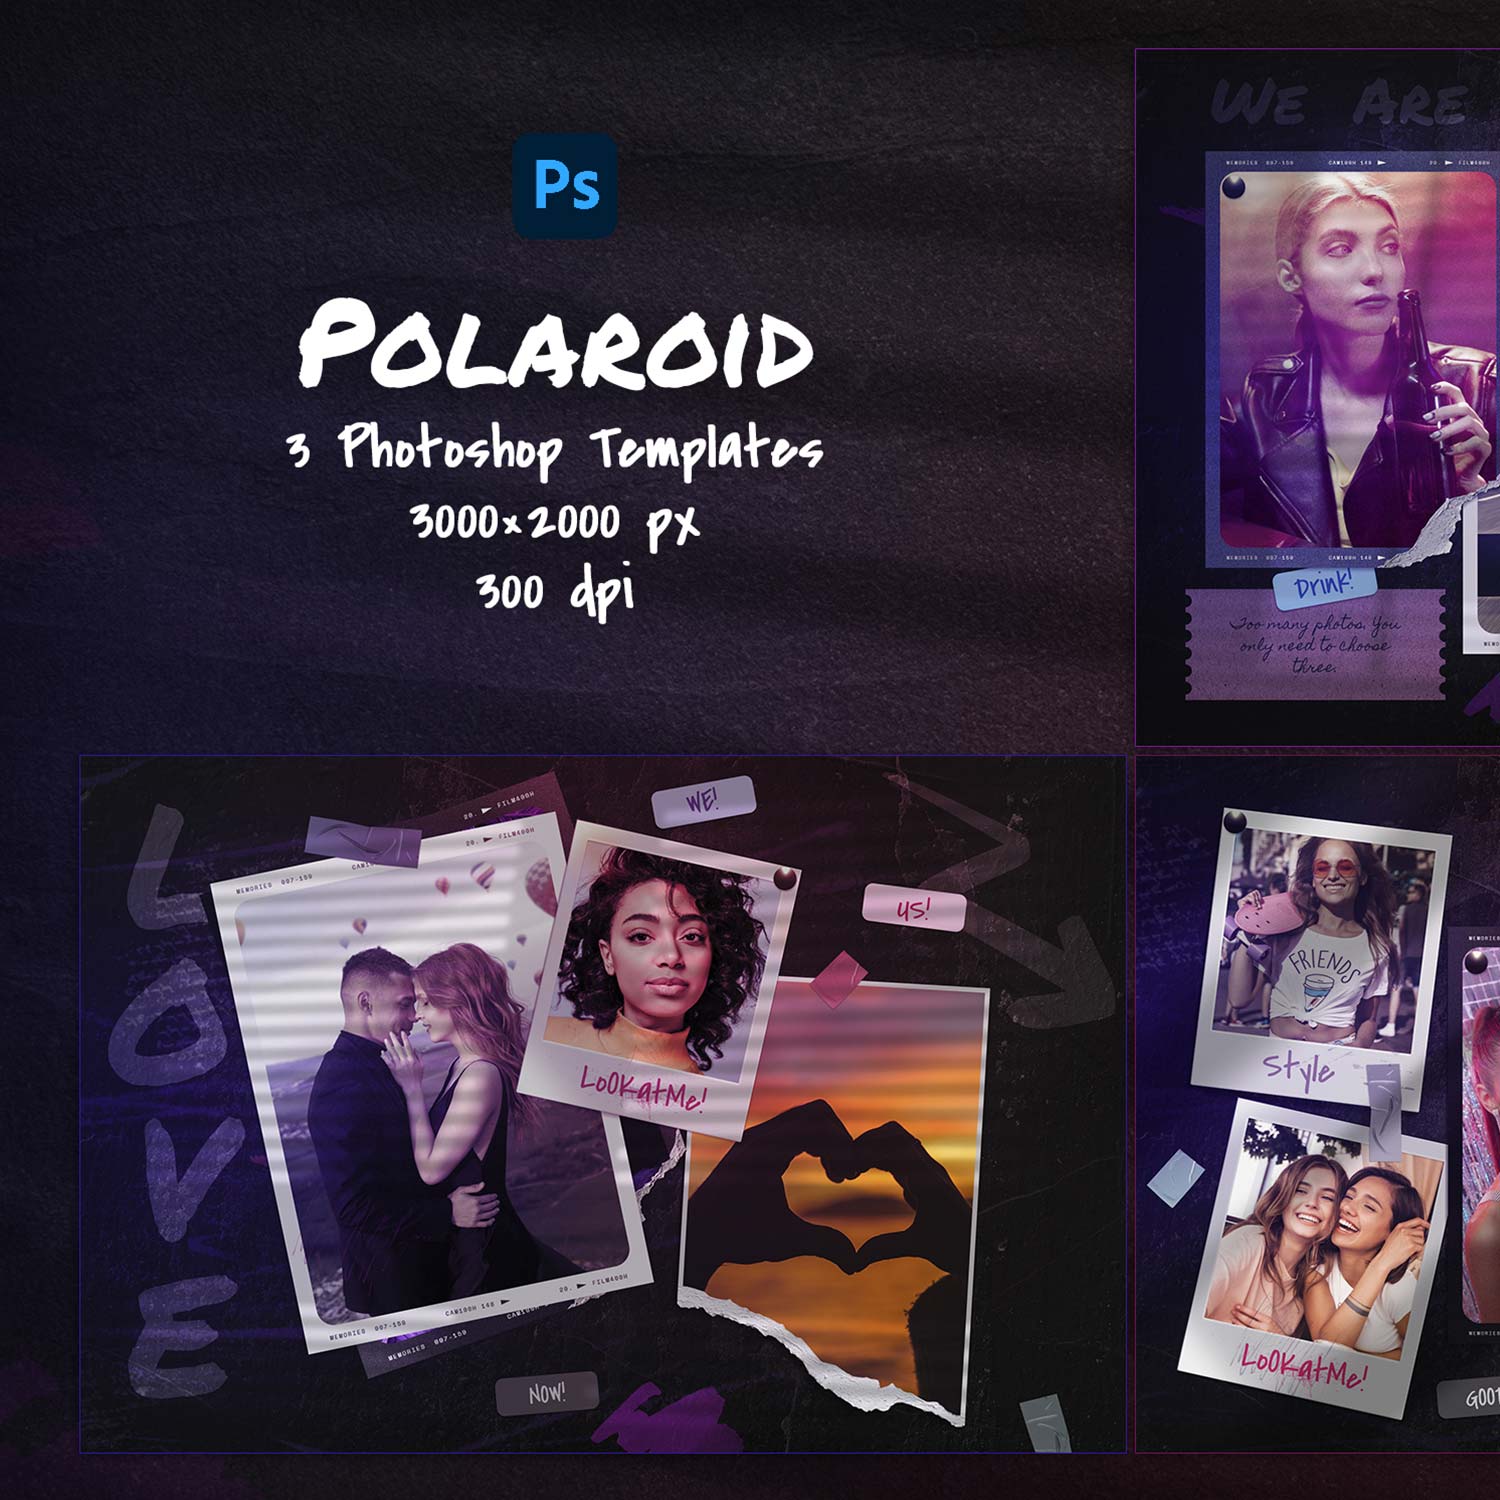 Polaroid Photo Templates preview image.